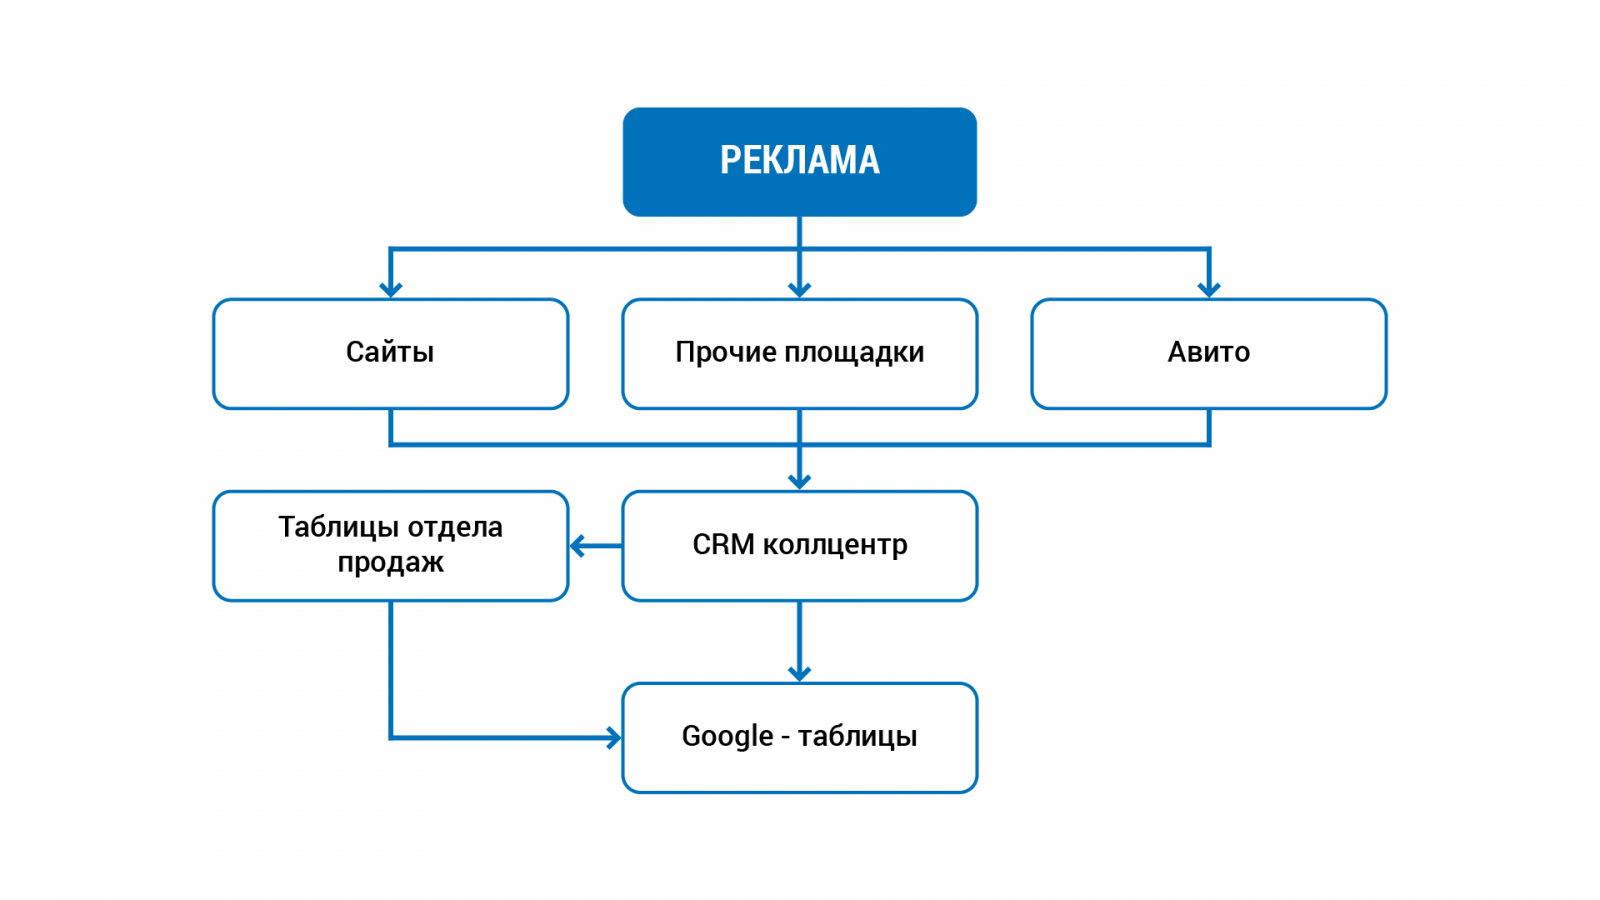 Схема 1. Каналы продаж и инструменты, которые использовал заказчик до внедрения системы аналитики